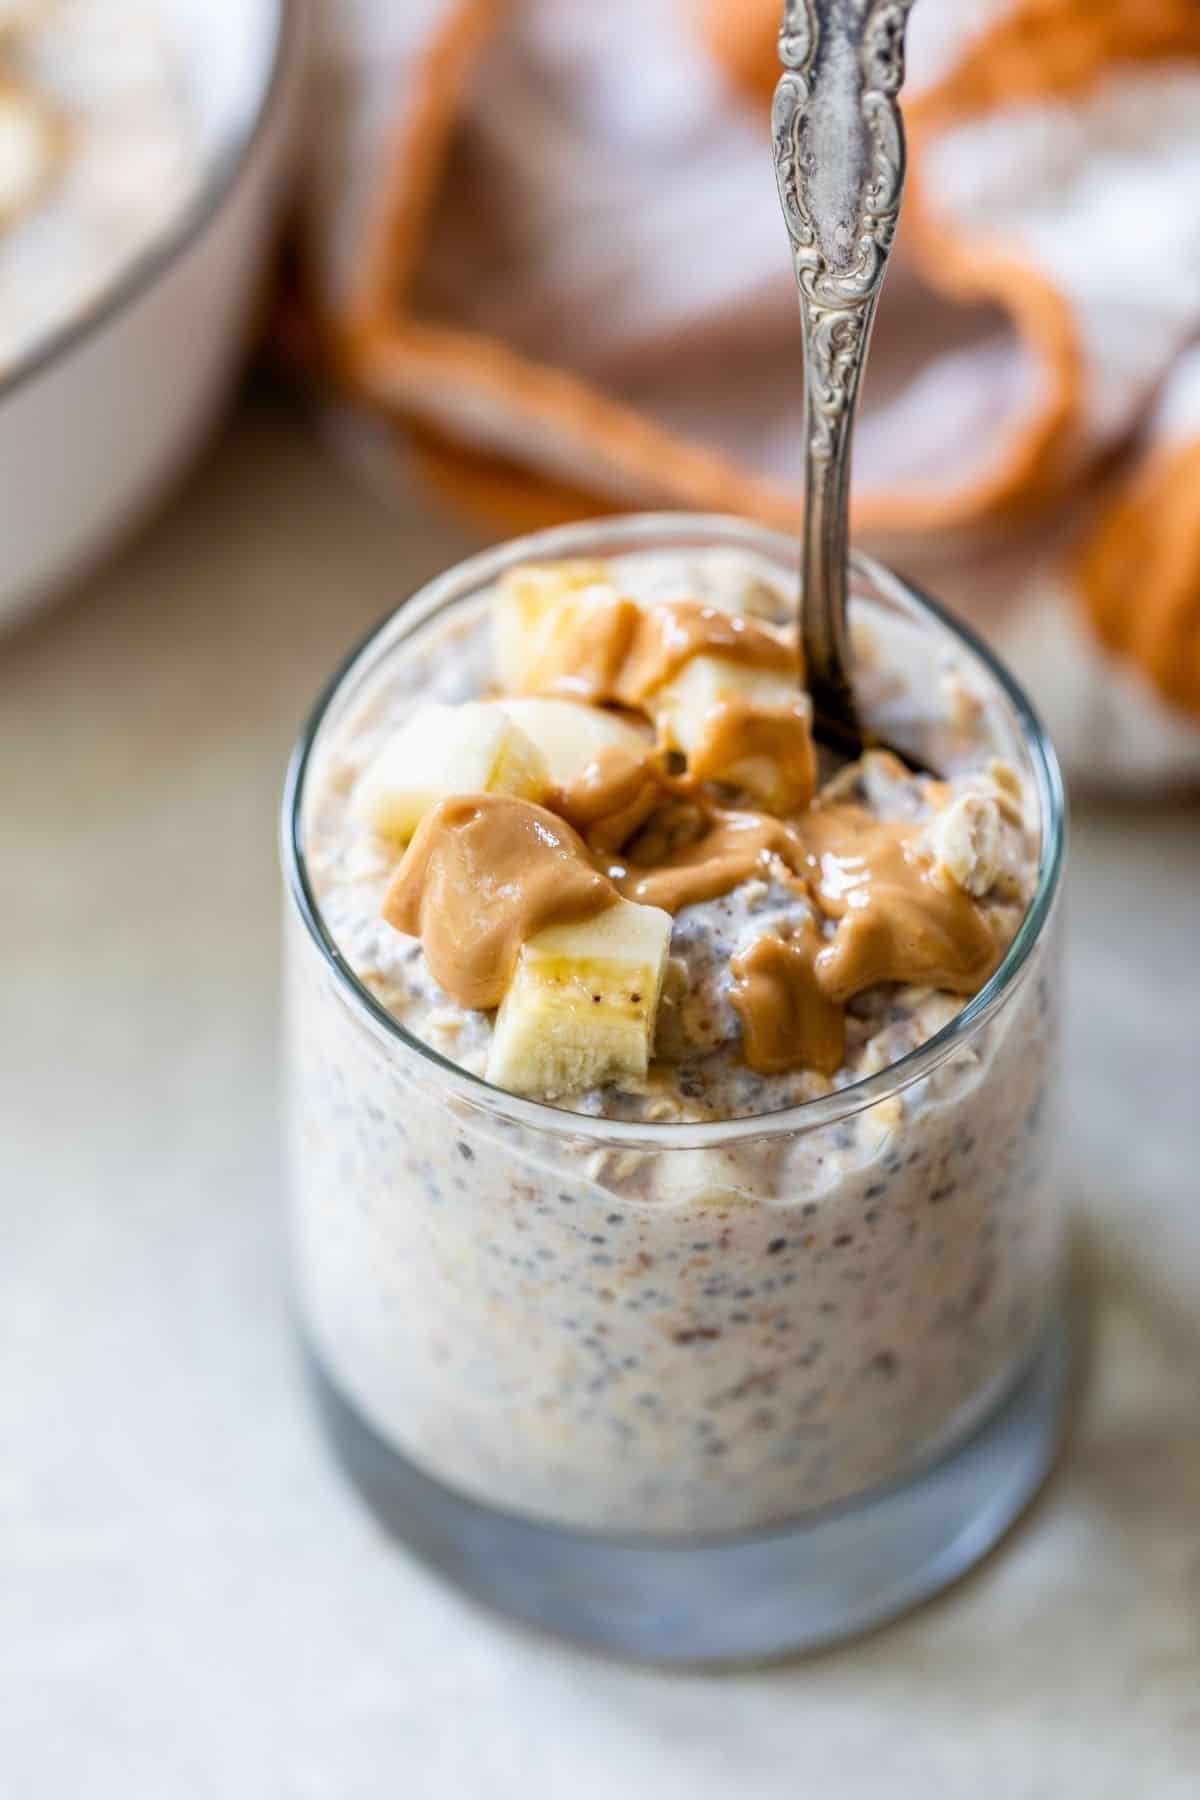 peanut butter banana overnight oats mixed in a glass jar